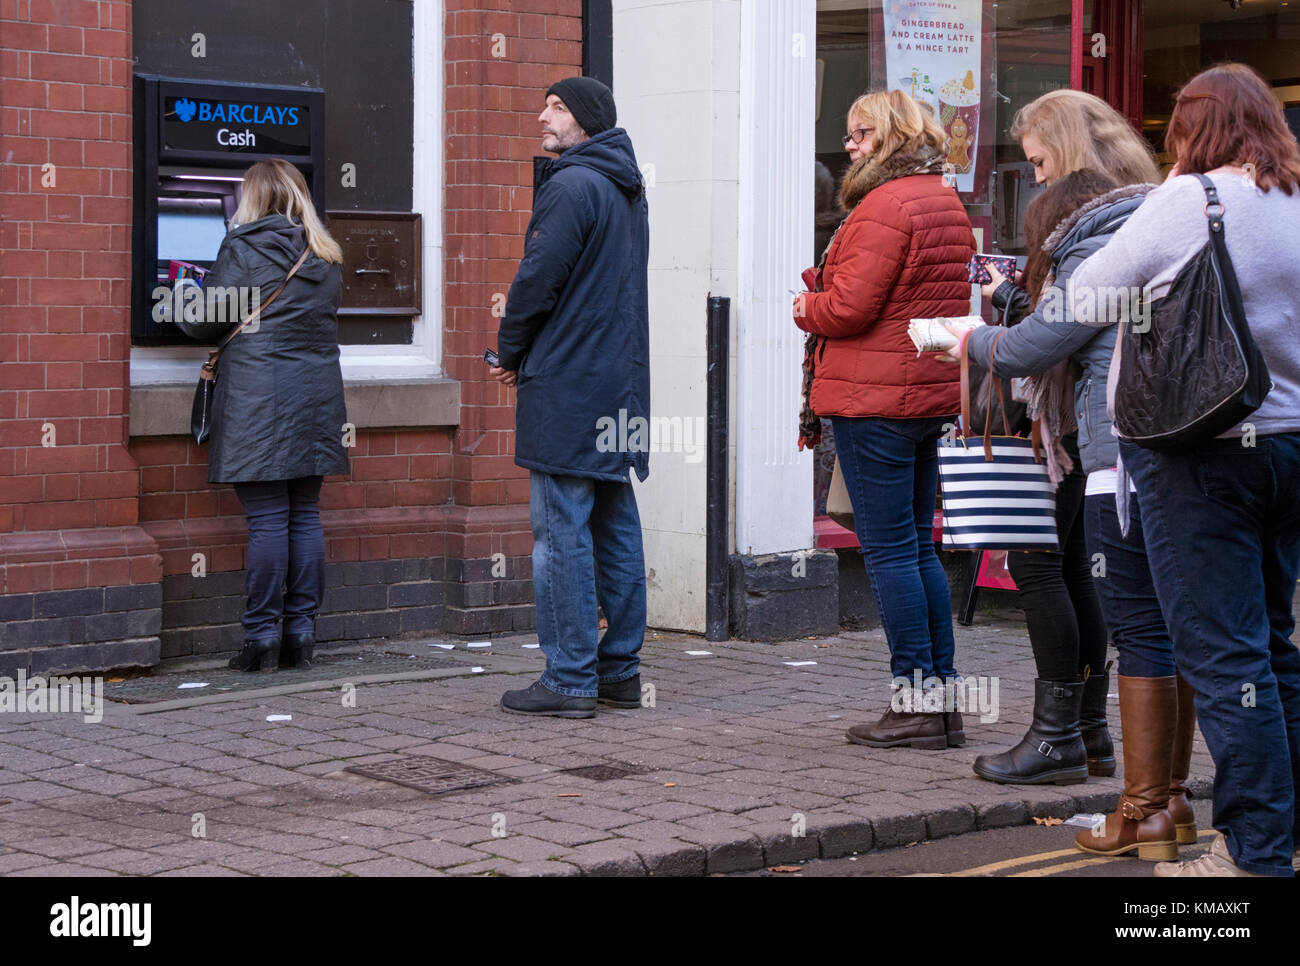 Une queue à un distributeur de billets de la rue haute, England, UK Banque D'Images